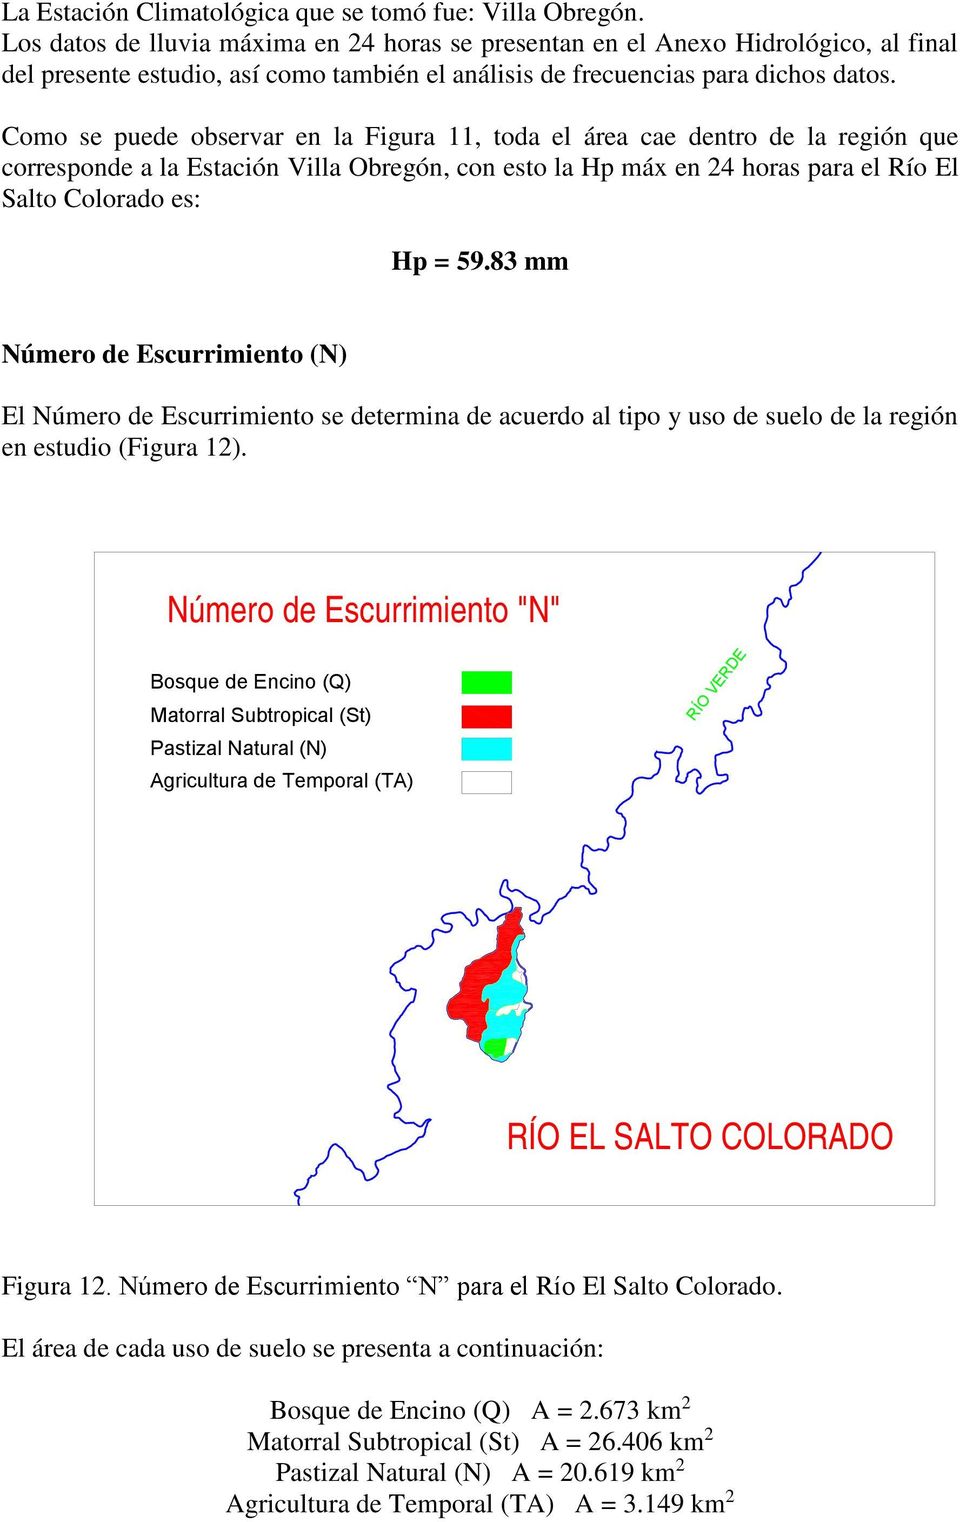 Como se puede observar en la Figura 11, toda el área cae dentro de la región que corresponde a la Estación Villa Obregón, con esto la Hp máx en 24 horas para el Río El Salto Colorado es: Hp = 59.